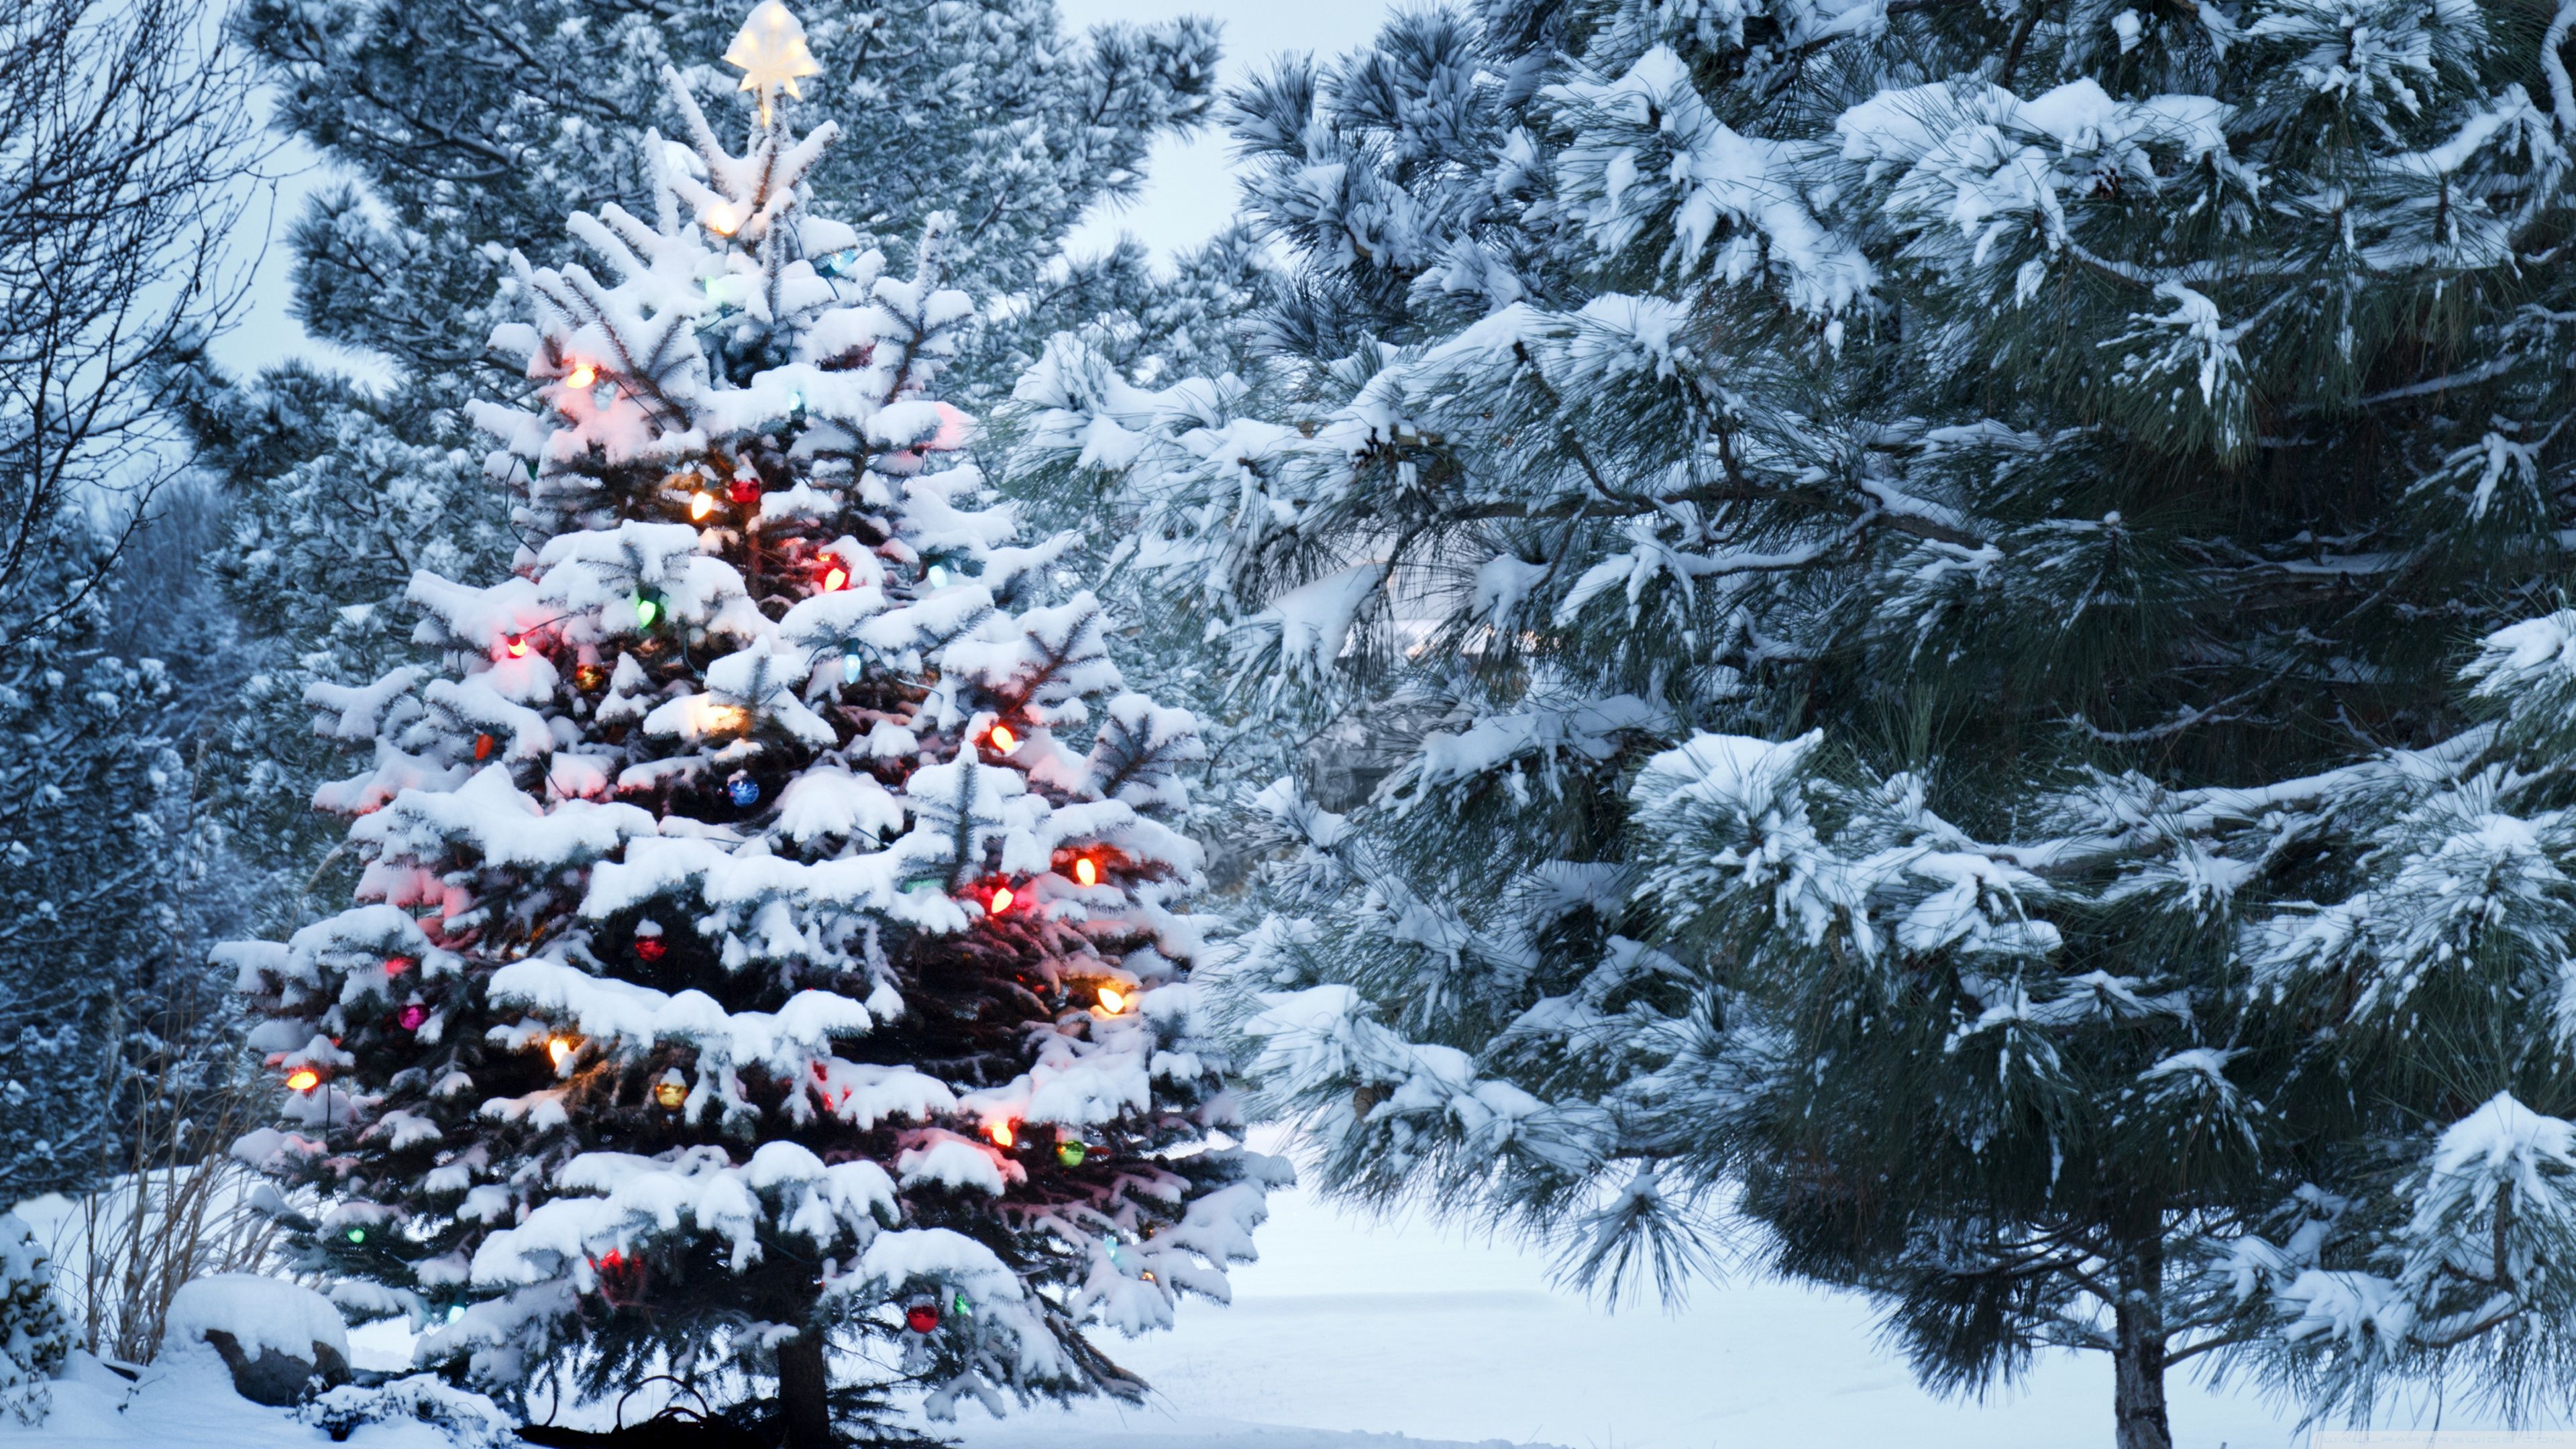 Tải xuống miễn phí những hình ảnh Giáng sinh đẹp nhất. Click để xem hình ảnh!